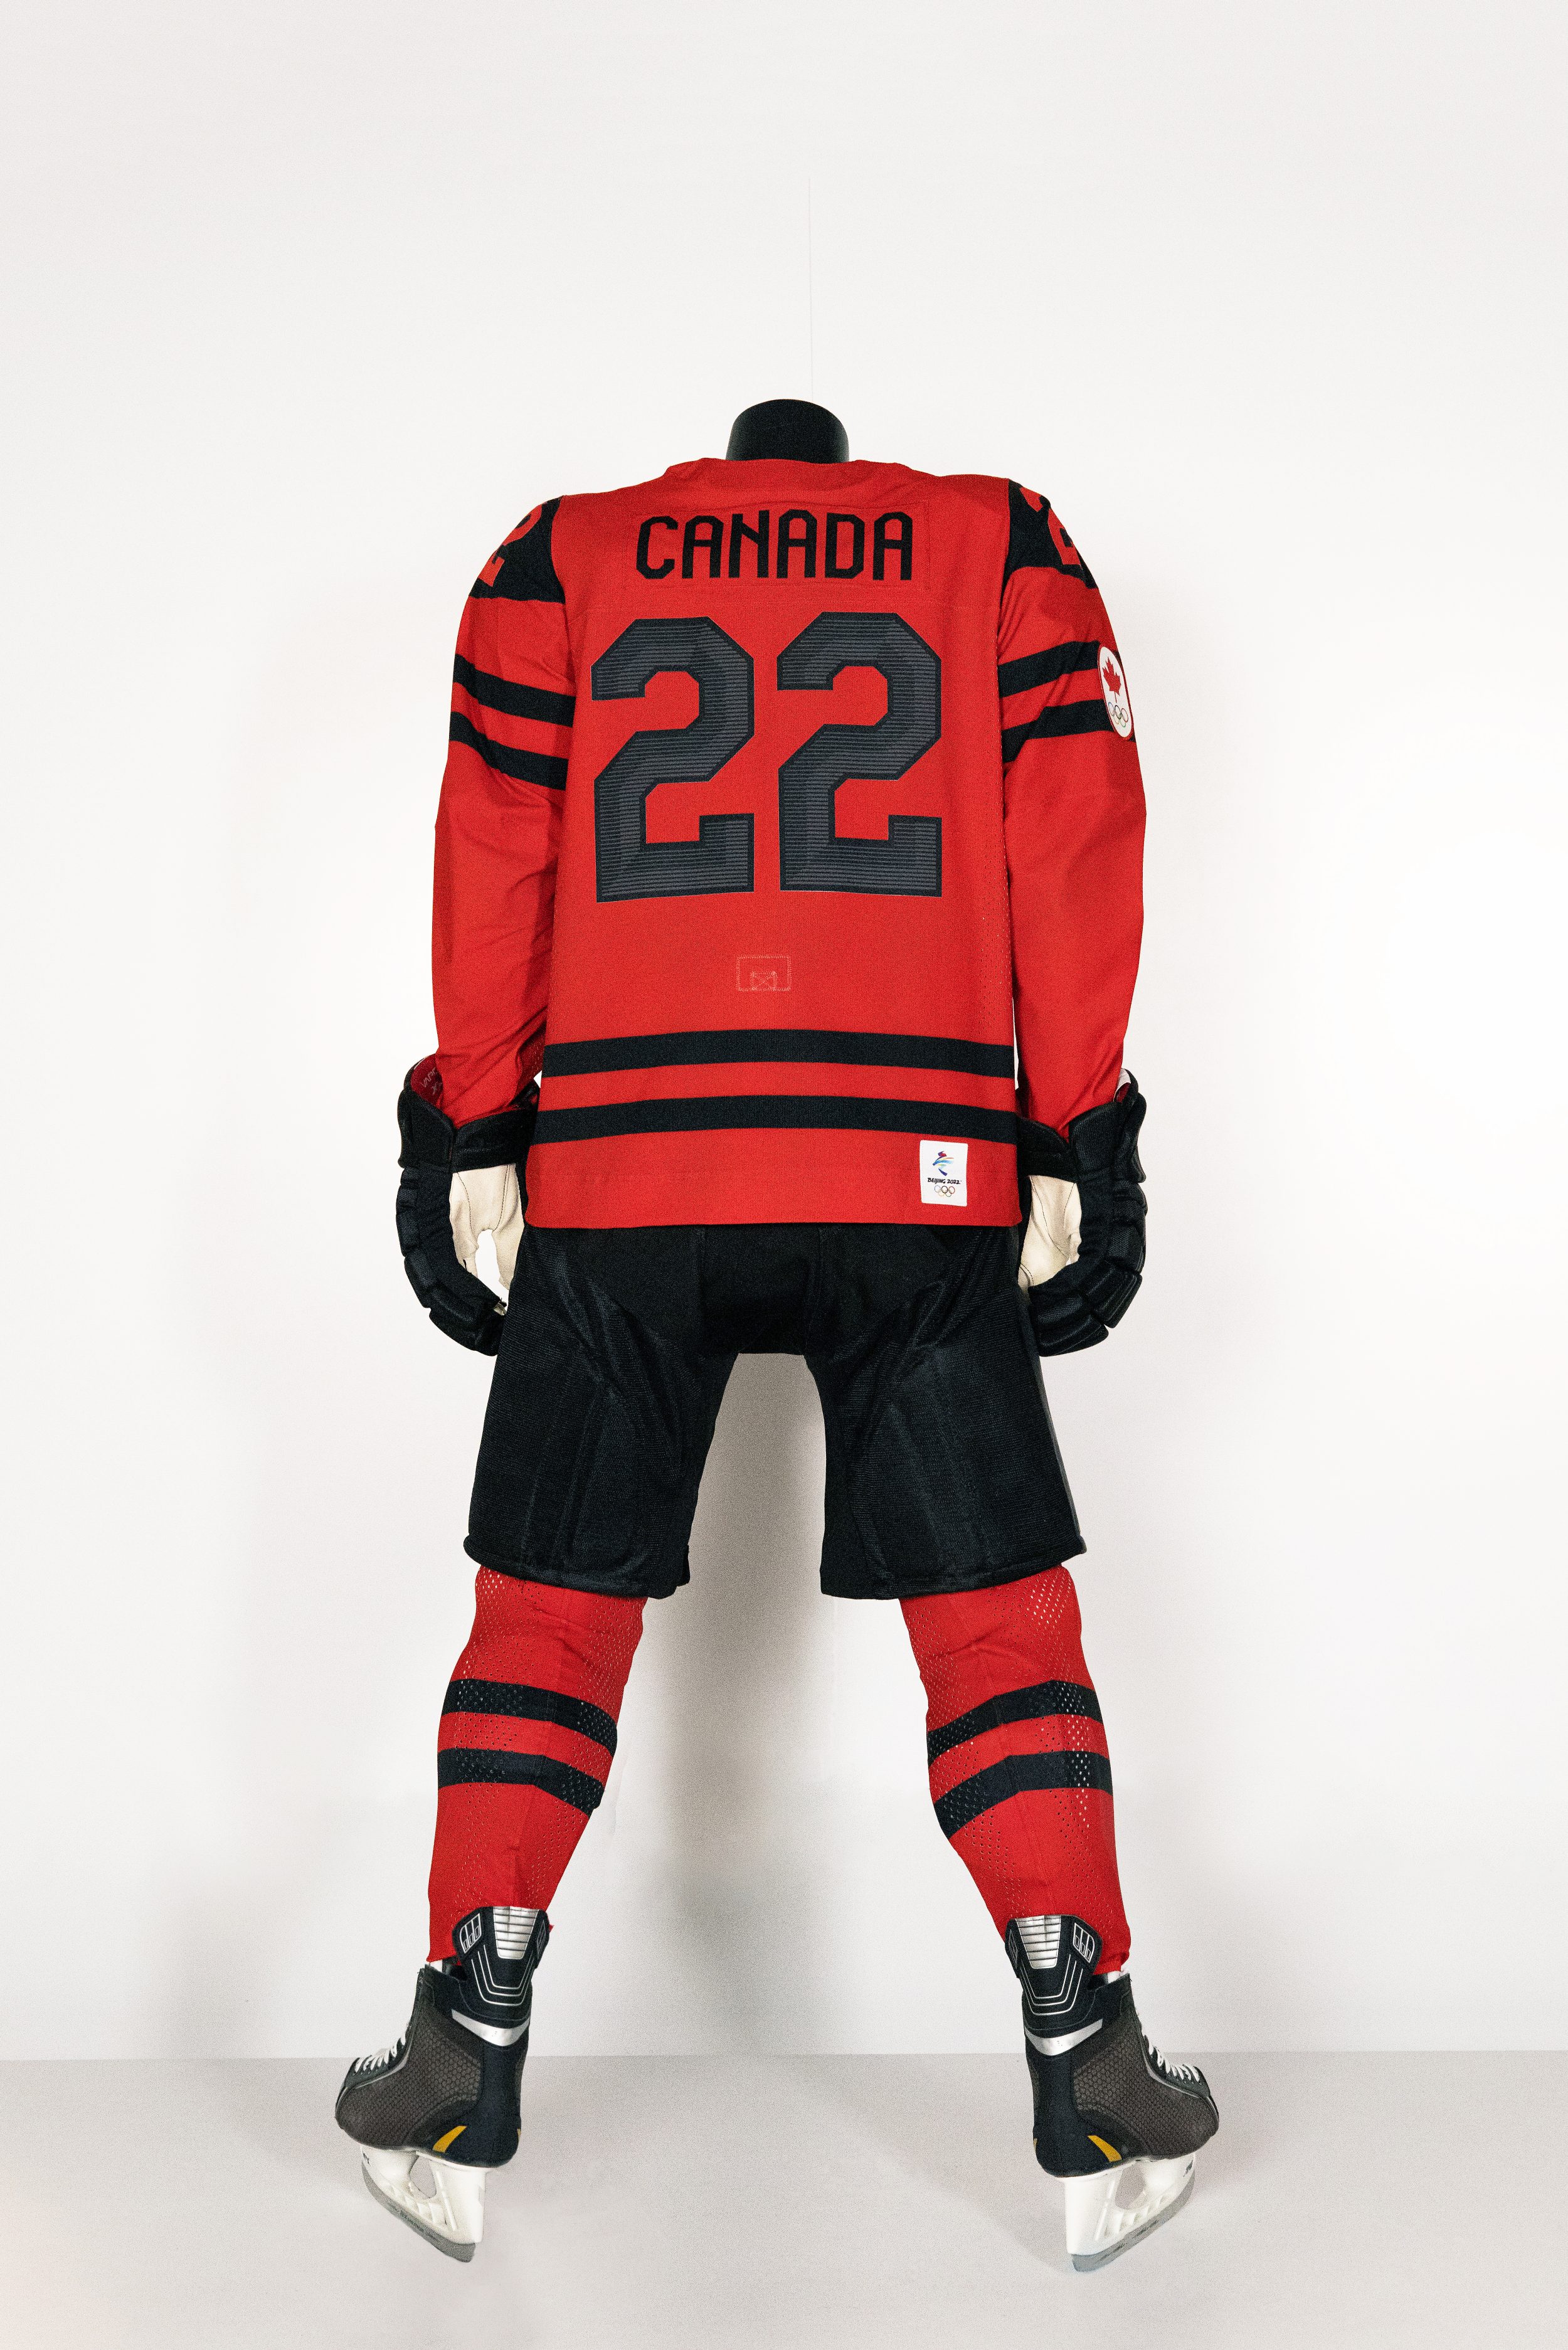 team hockey jerseys canada